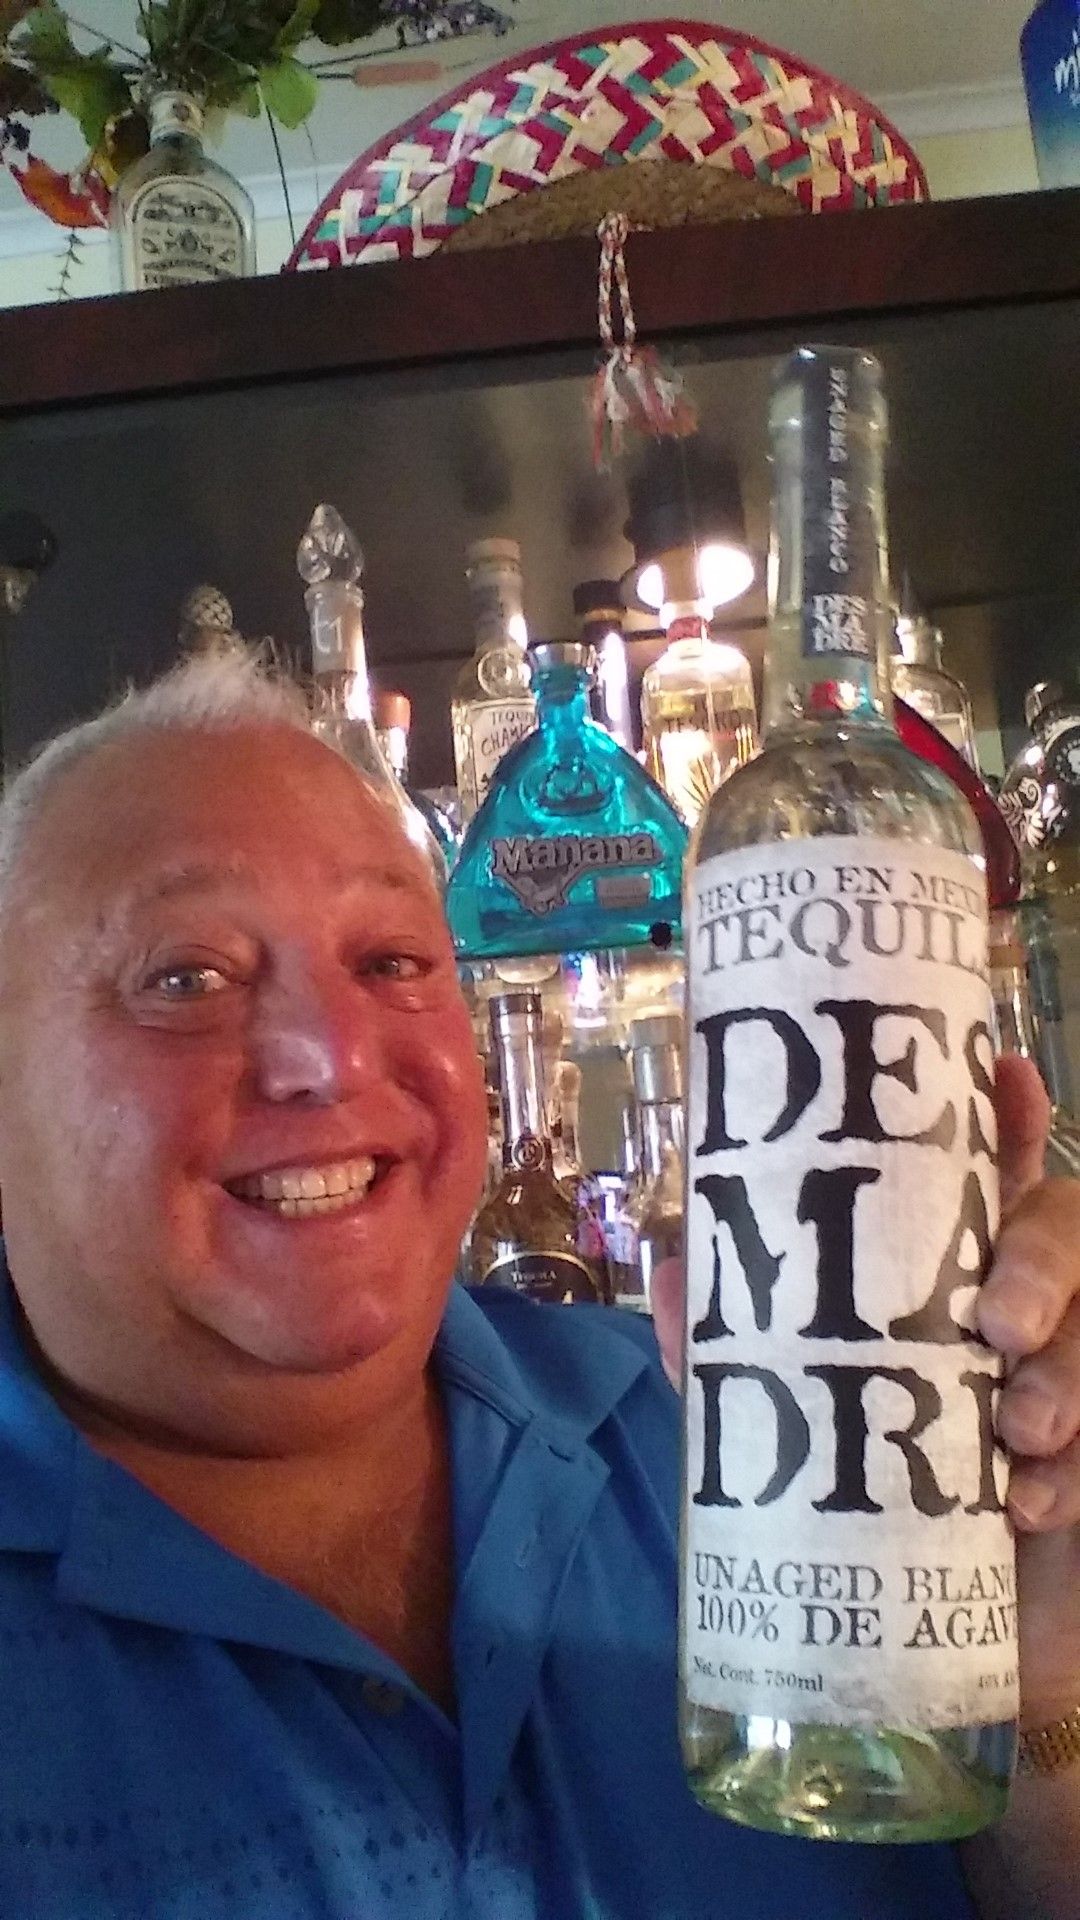 DesMaDre Tequila -  A Pleasant Surprise